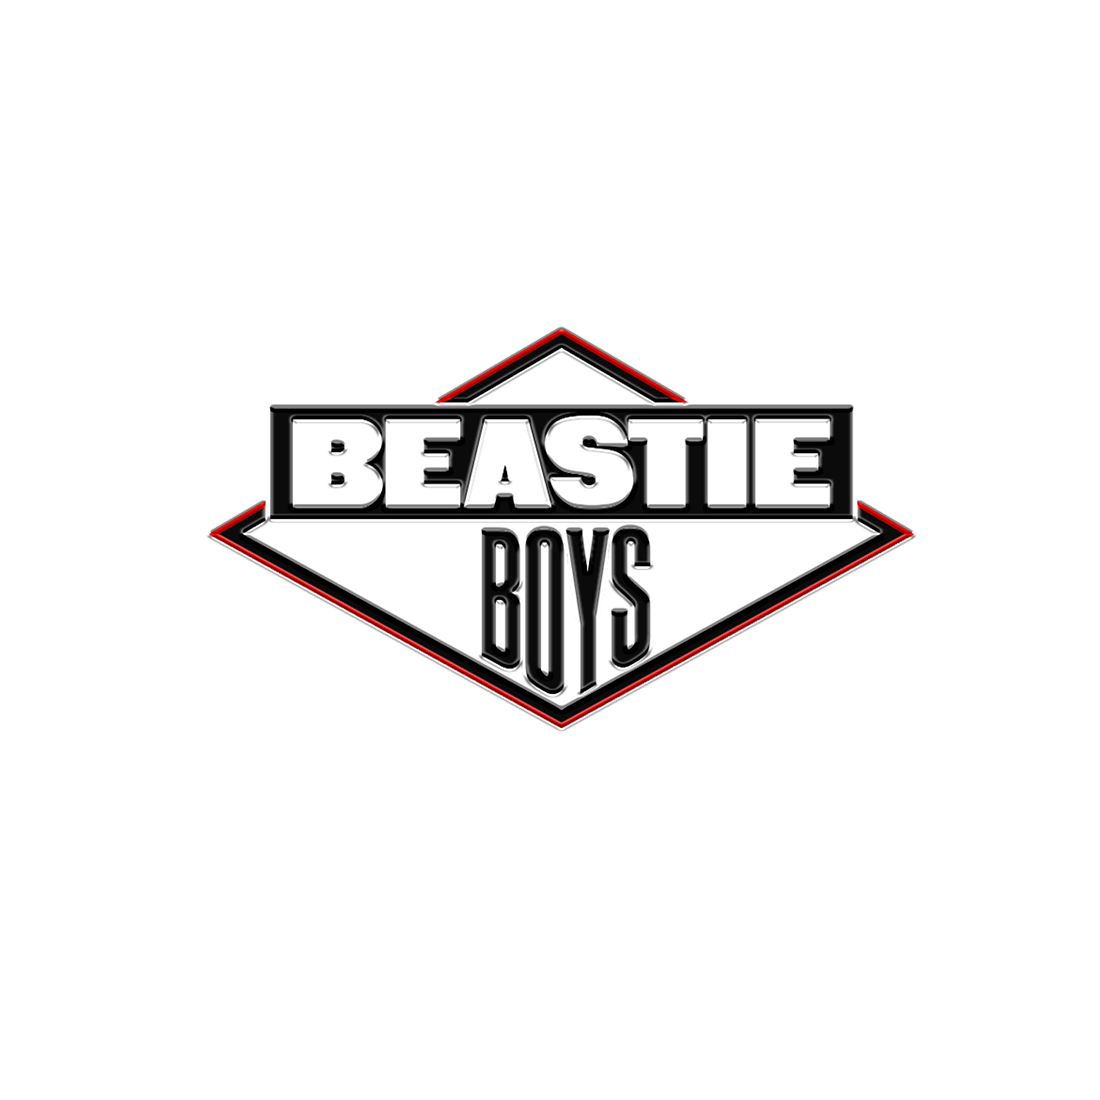 Beastie Boys - Beastie Boys Diamond Logo Pin